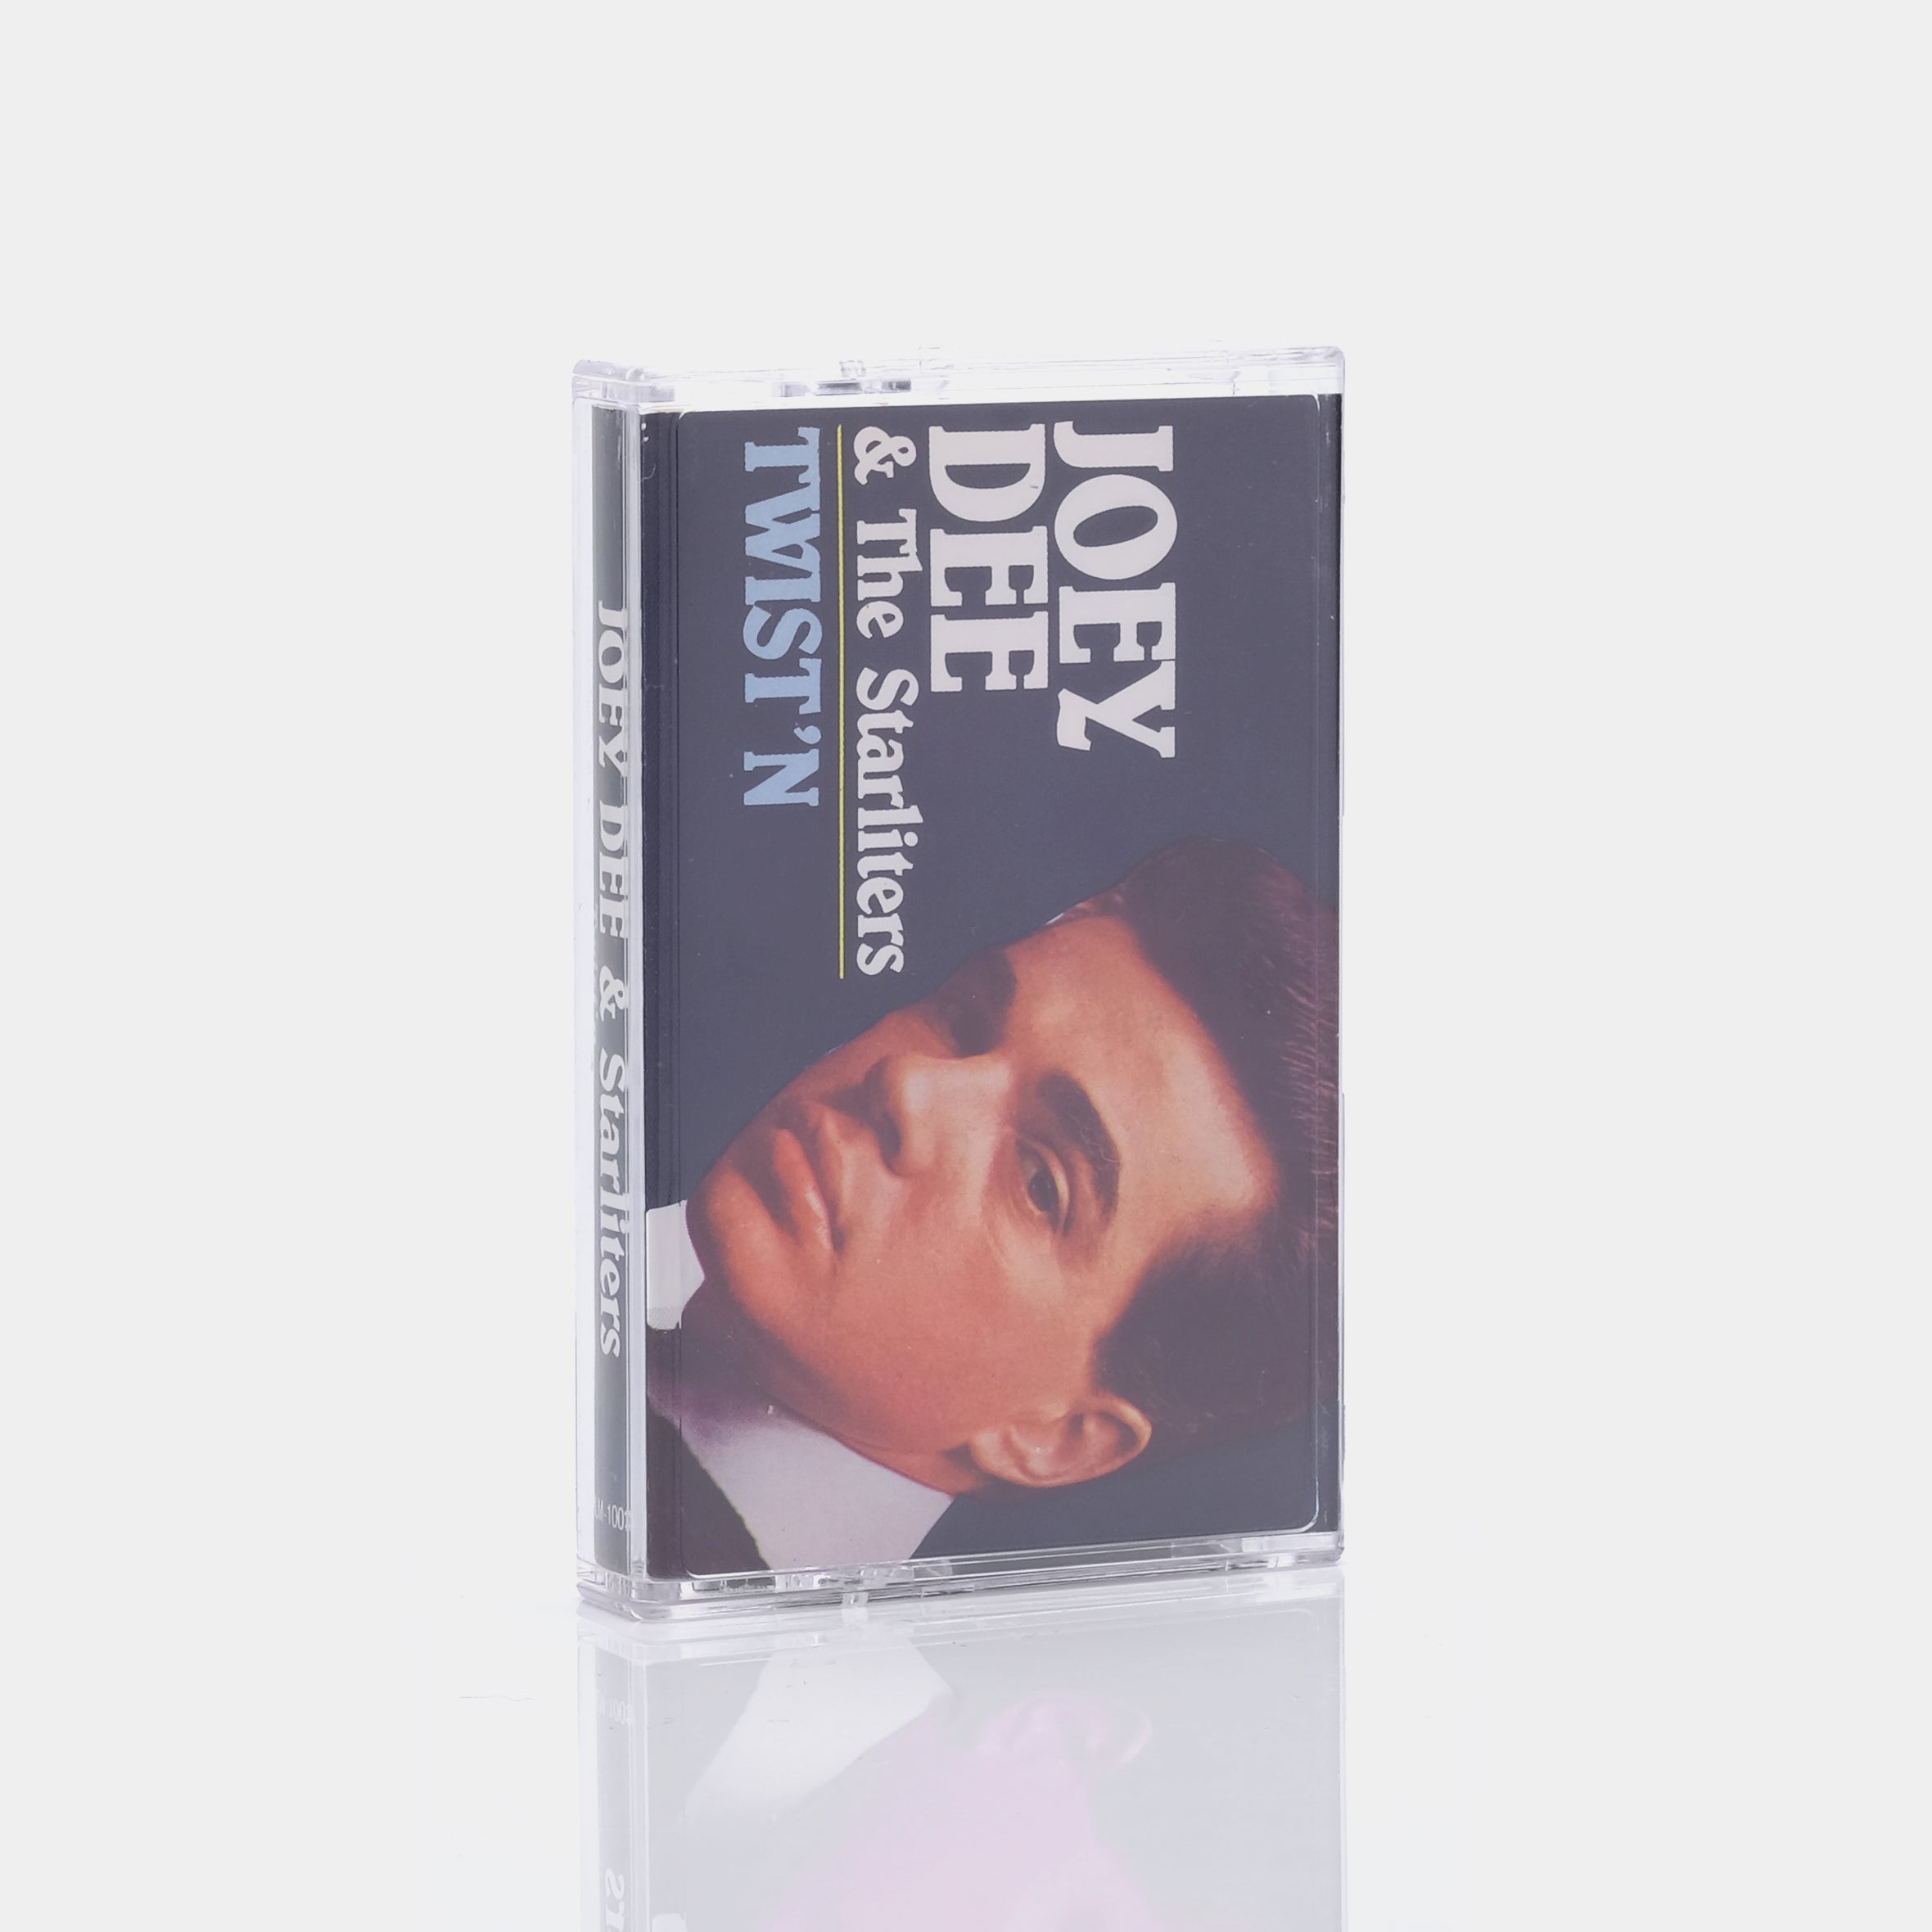 Joey Dee & The Starliters - Twist'n Cassette Tape